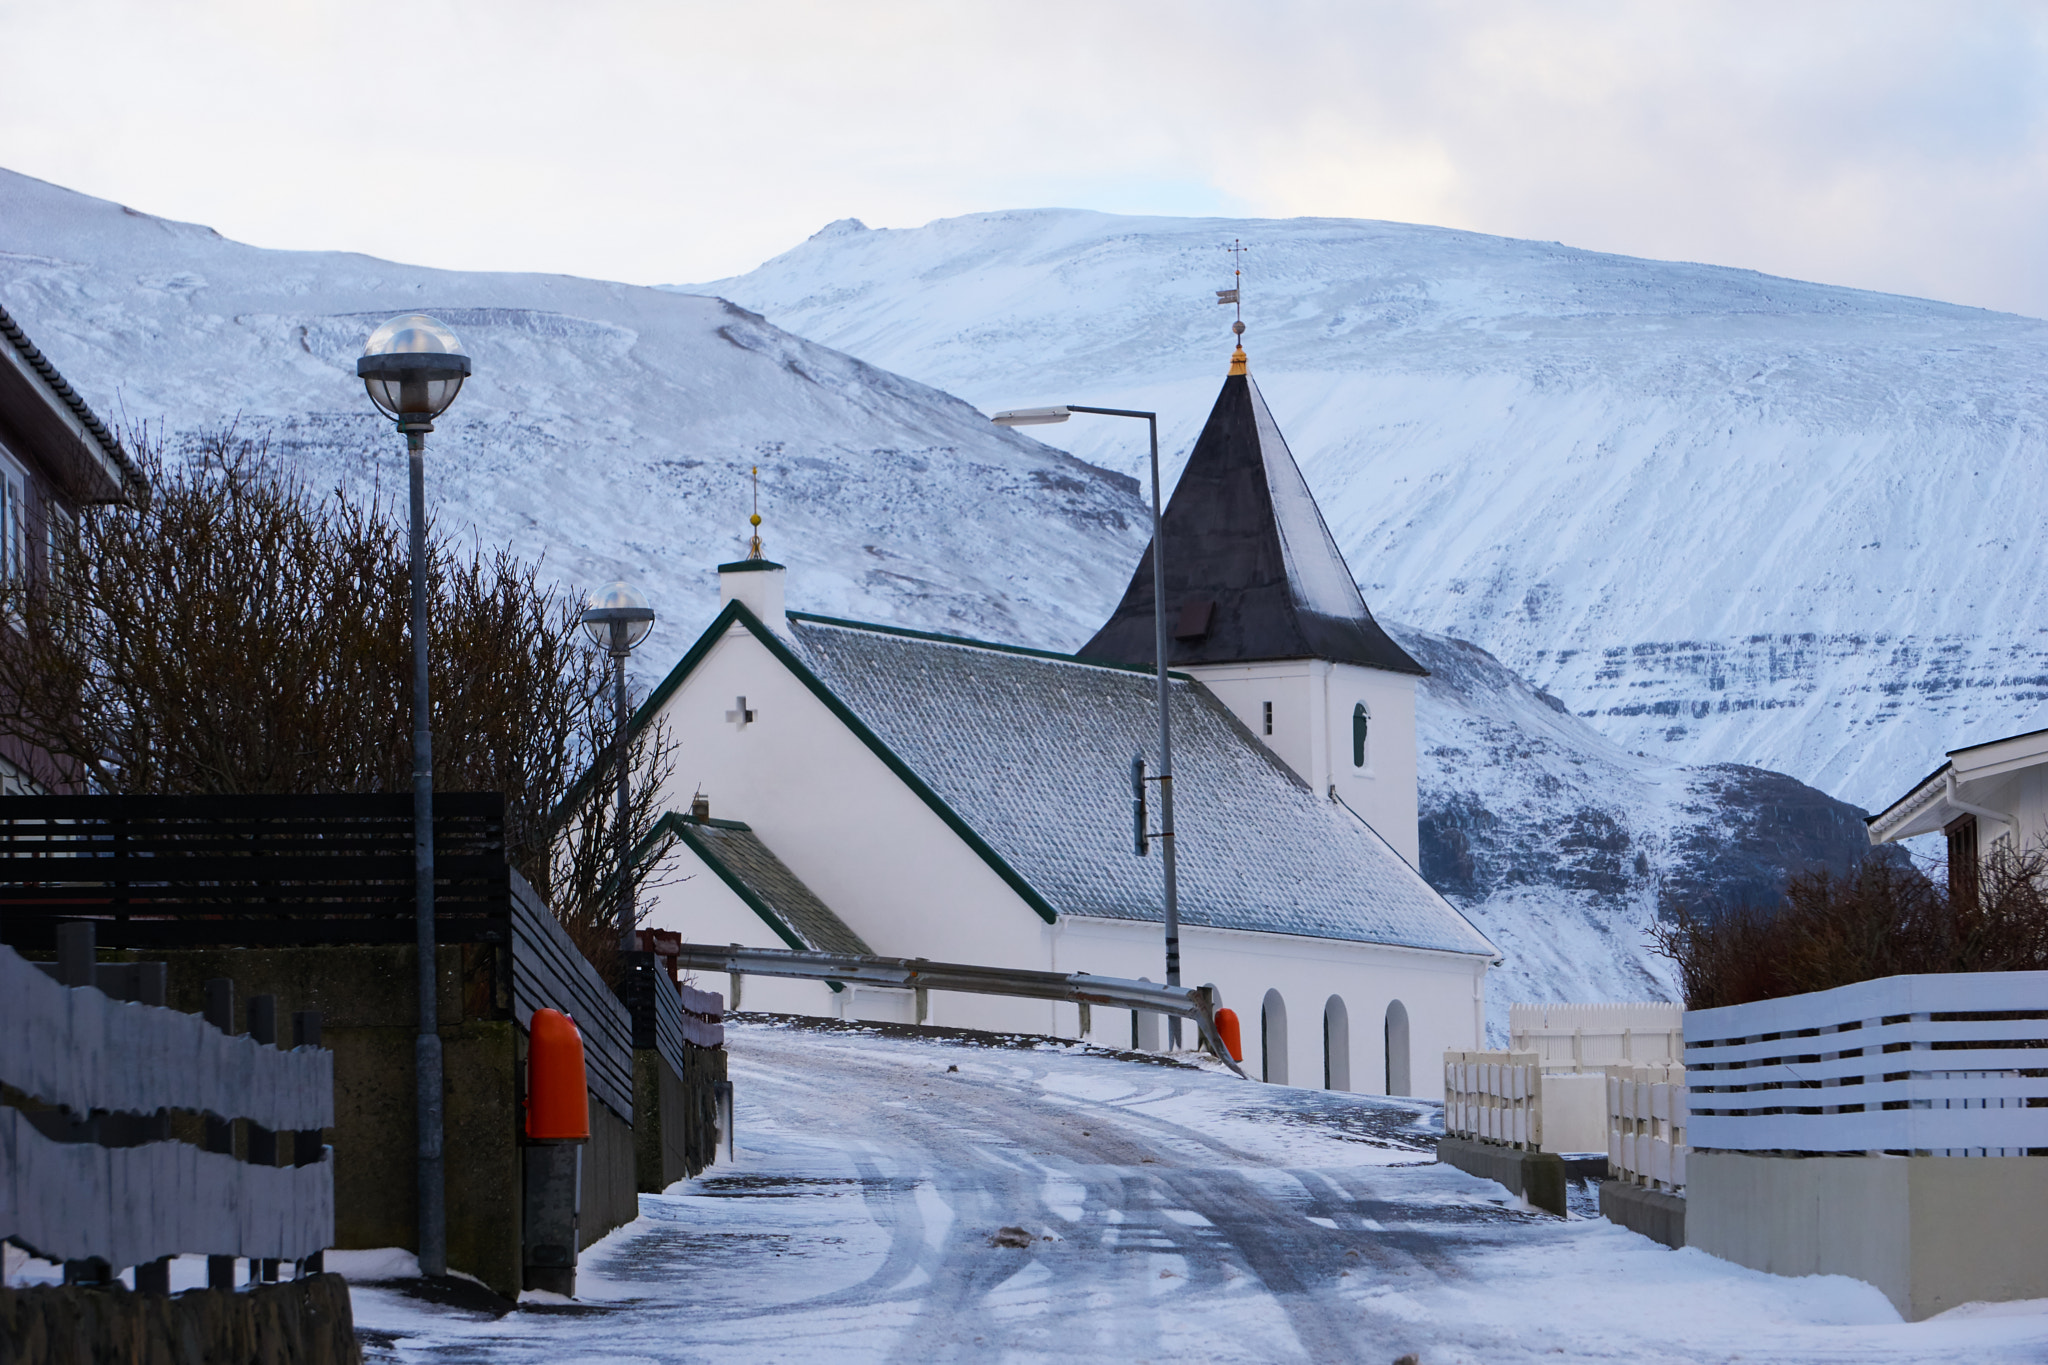 Sony a6000 sample photo. Eiði's church photography